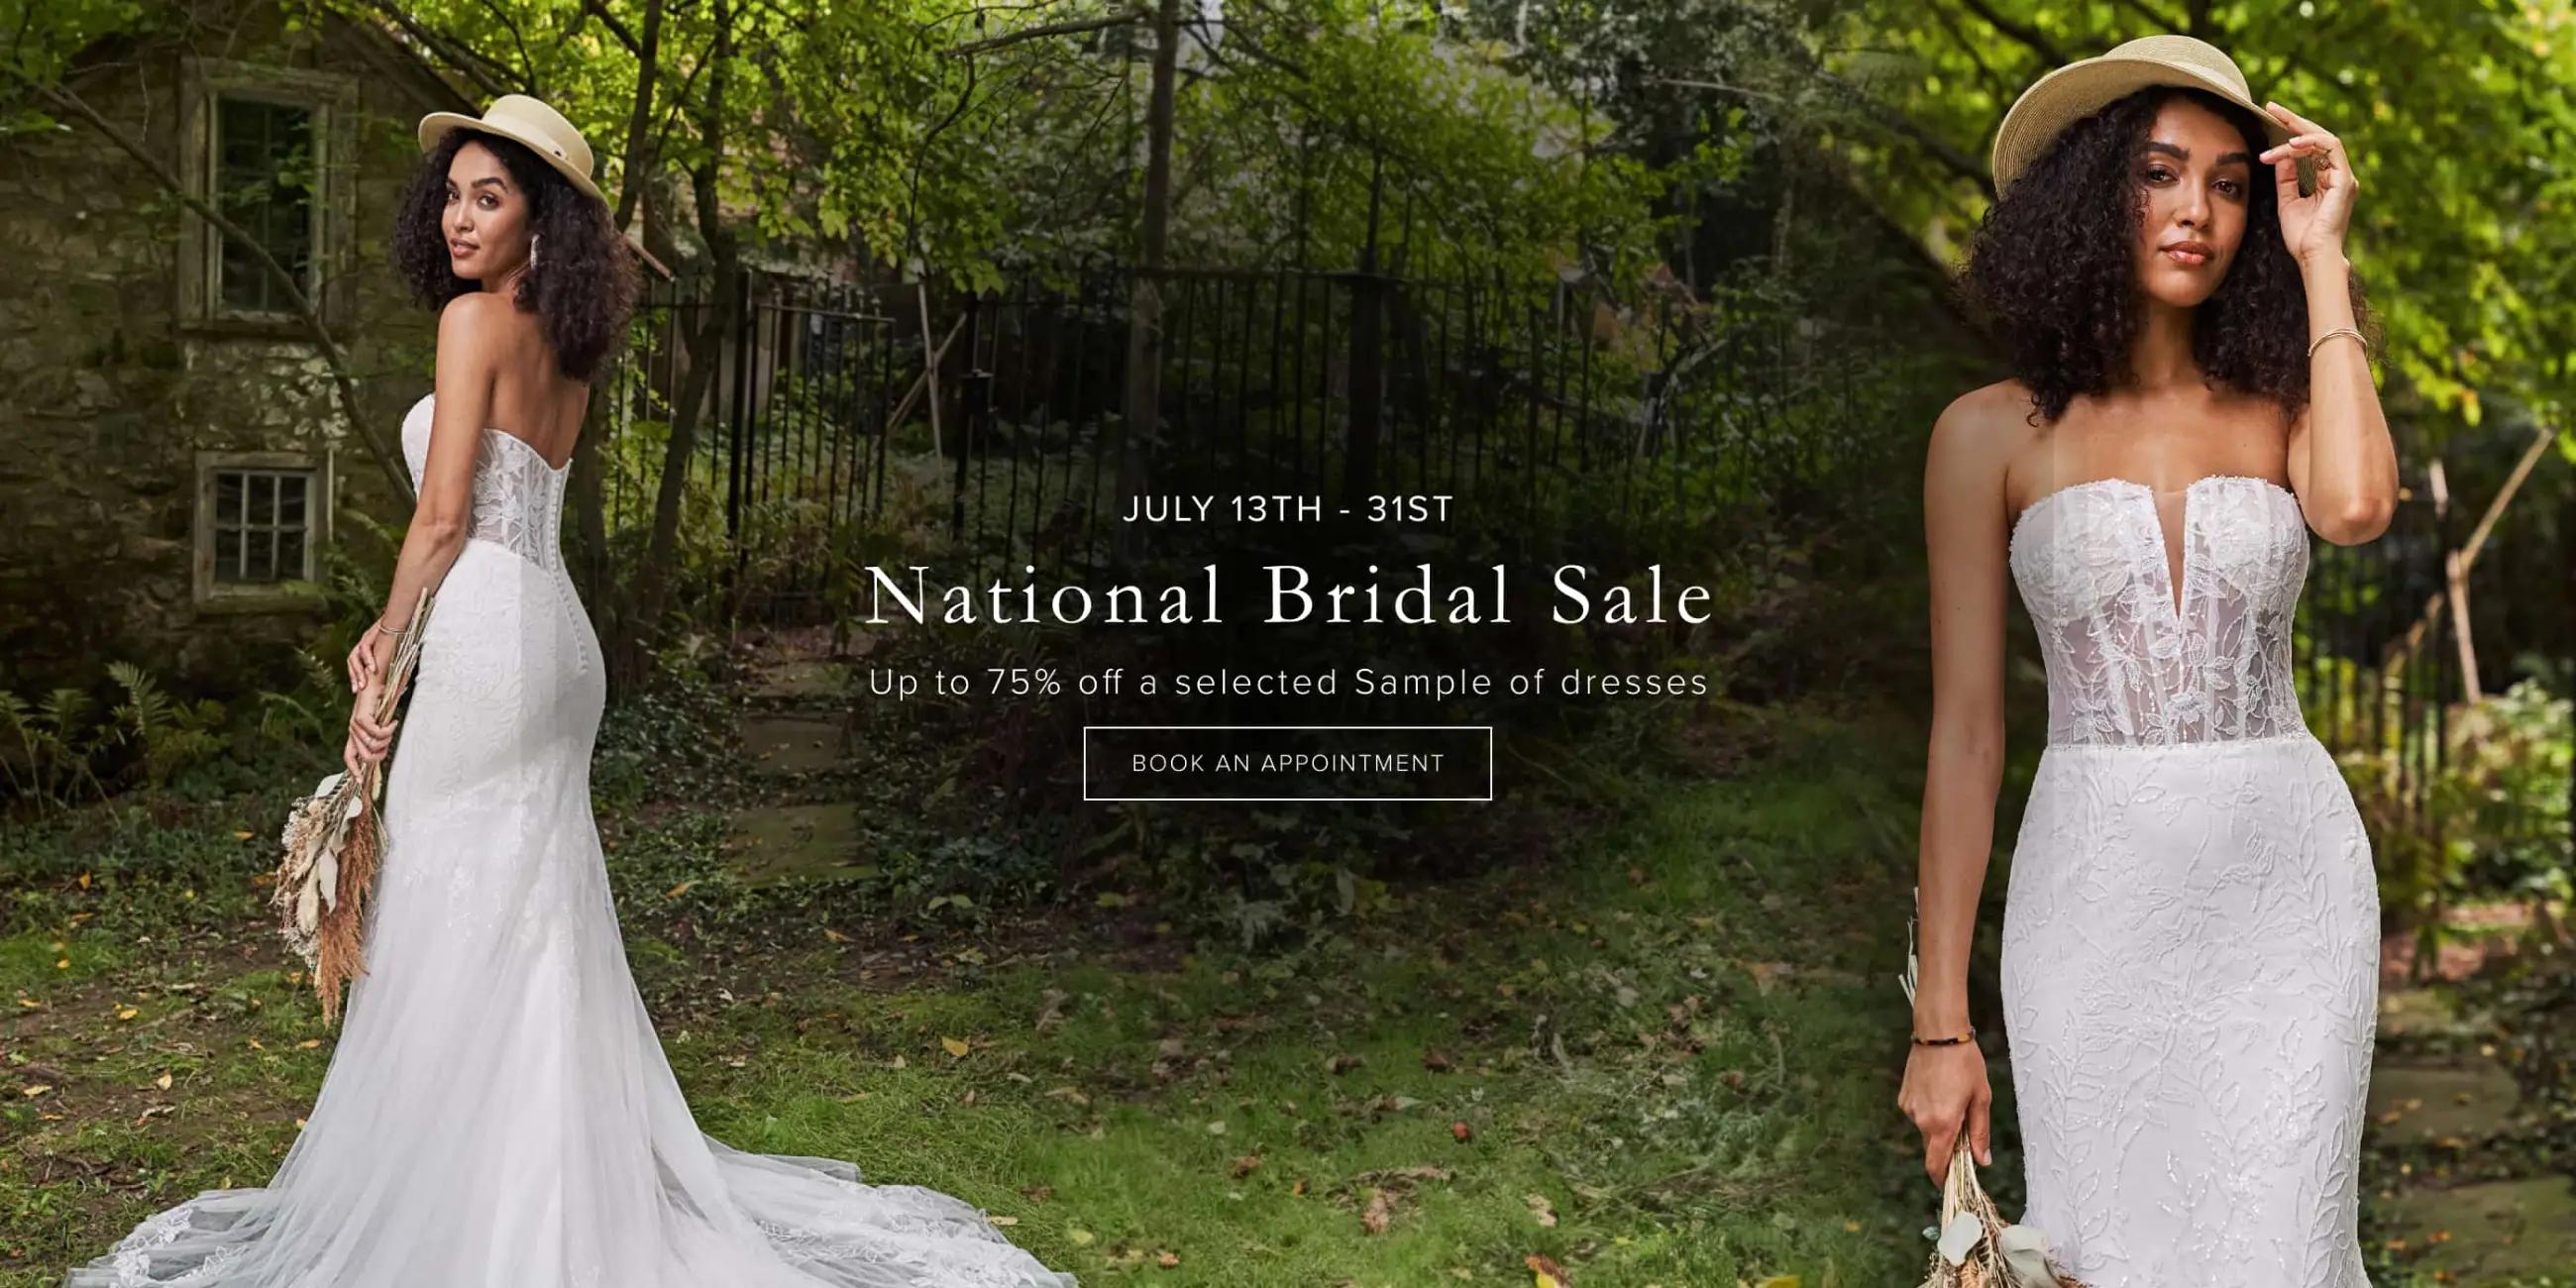 National Bridal Sale 2024 Banner for Desktop